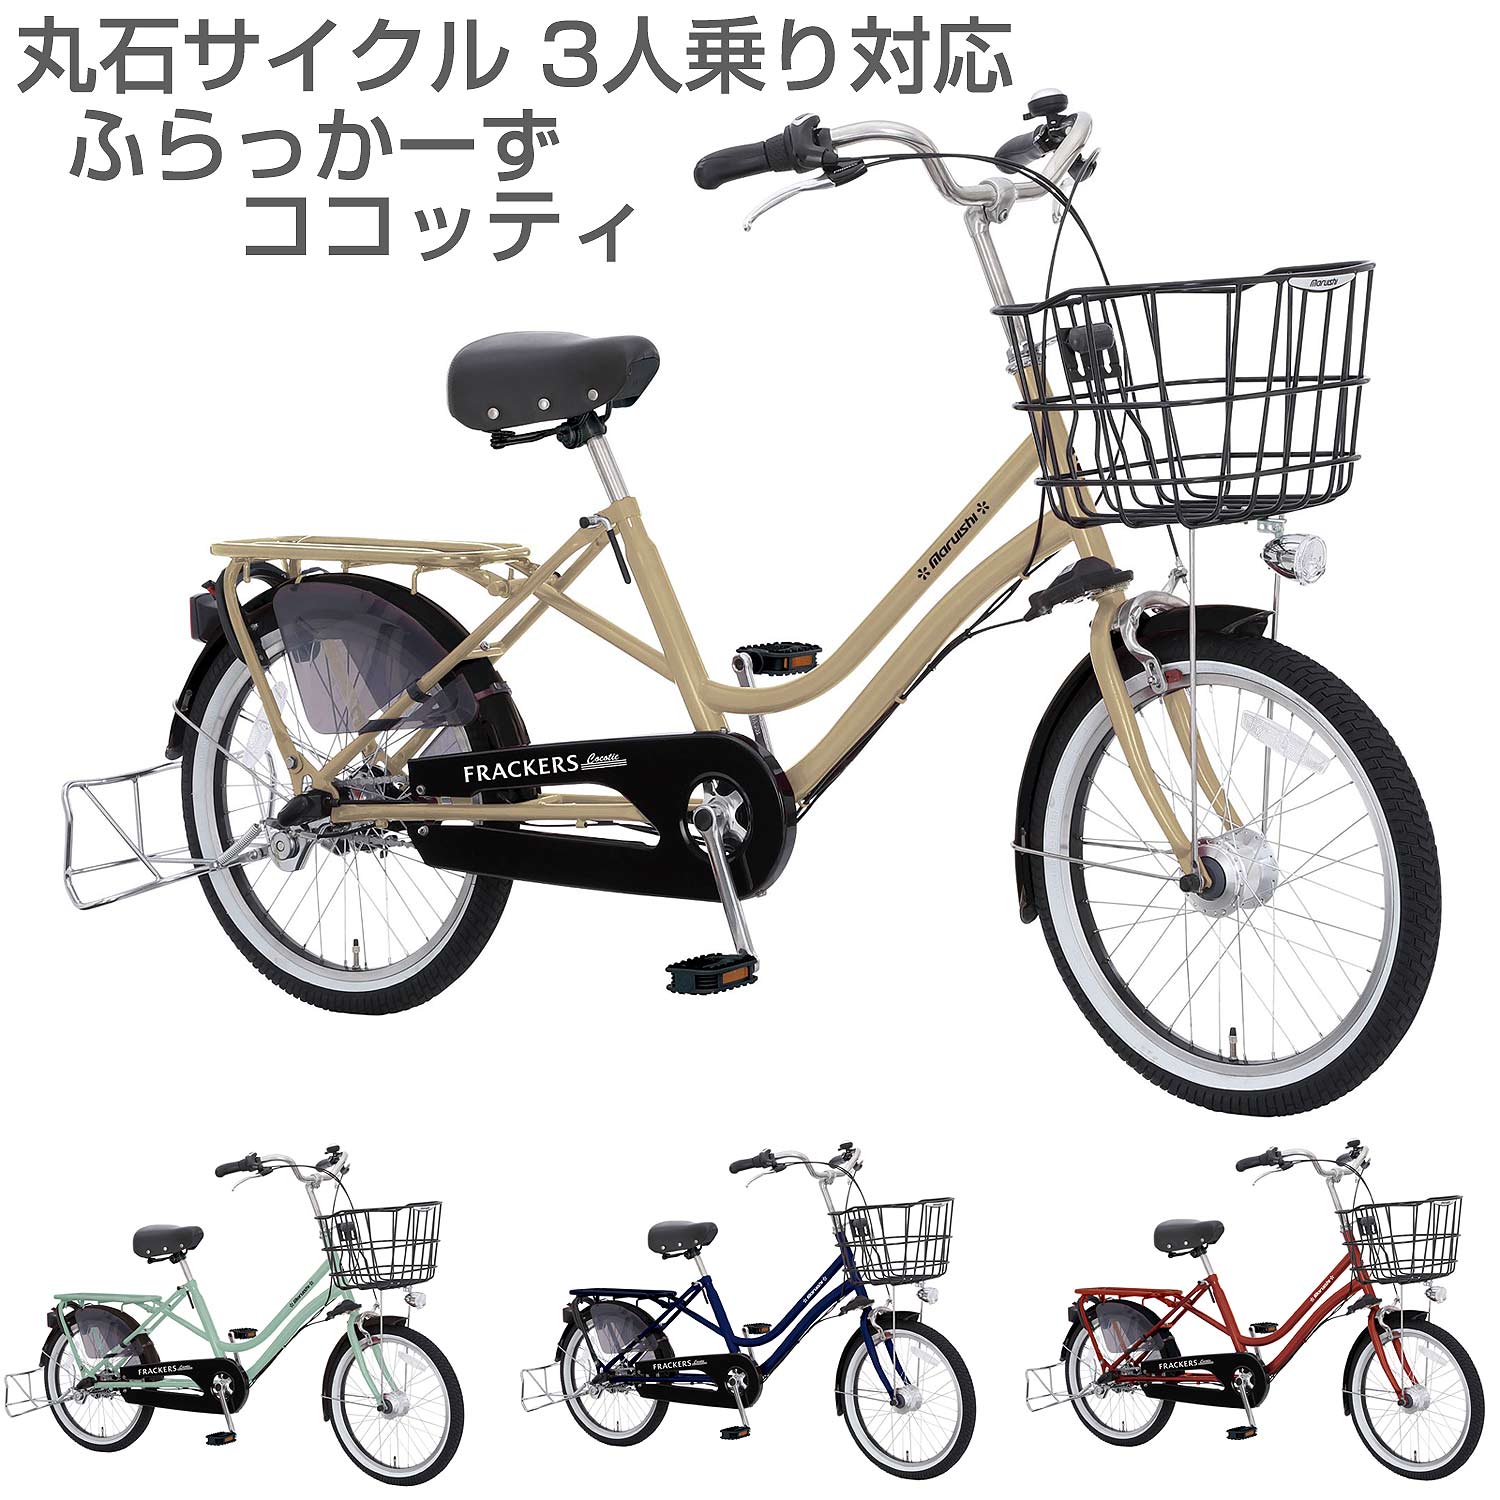 16490円値引き セール 【待望 】 前子供乗せ自転車 maruishi FRACKERS